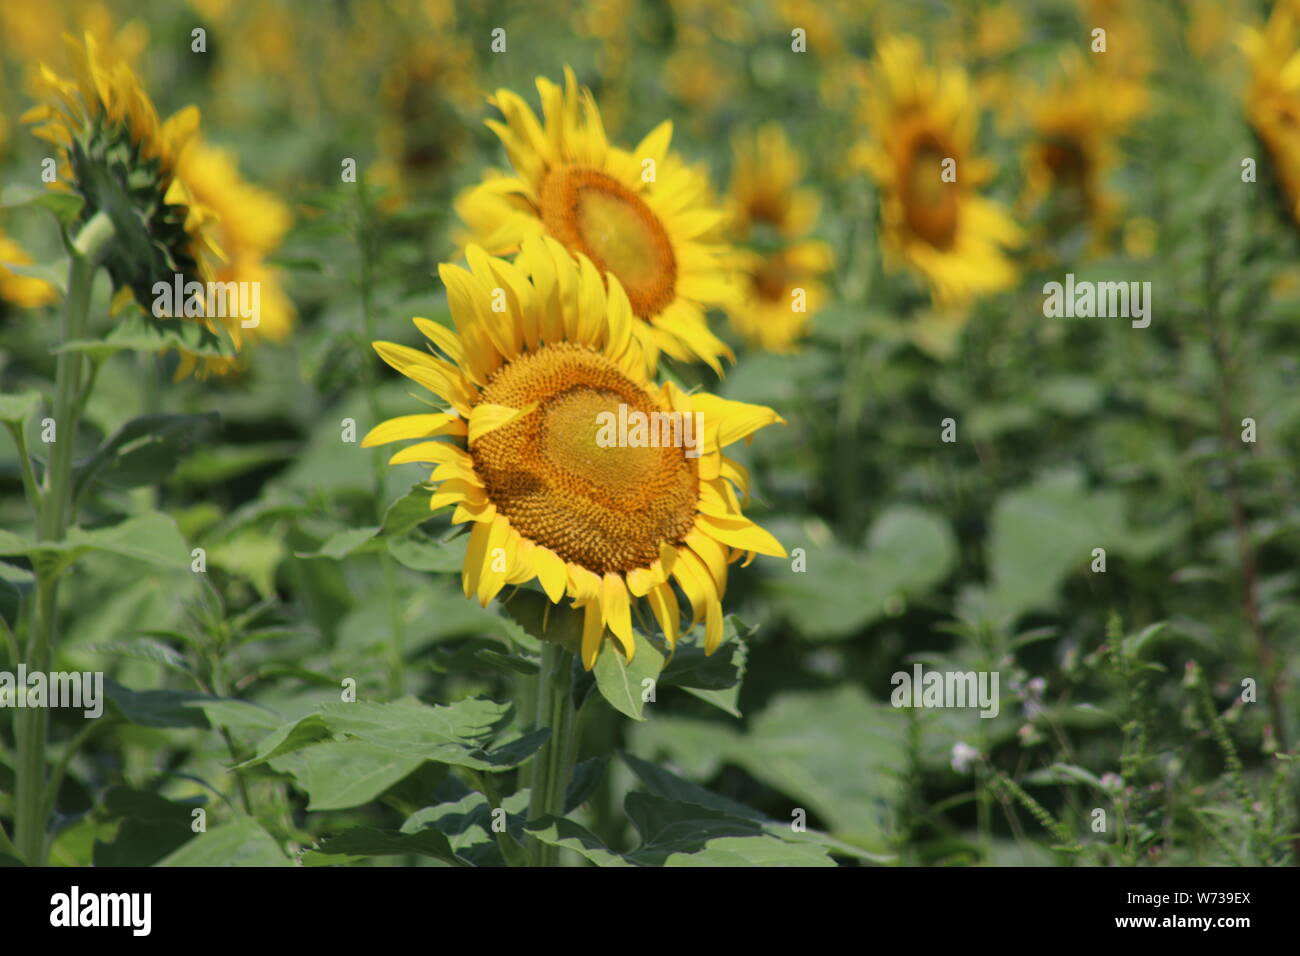 Sunflower heads Stock Photo